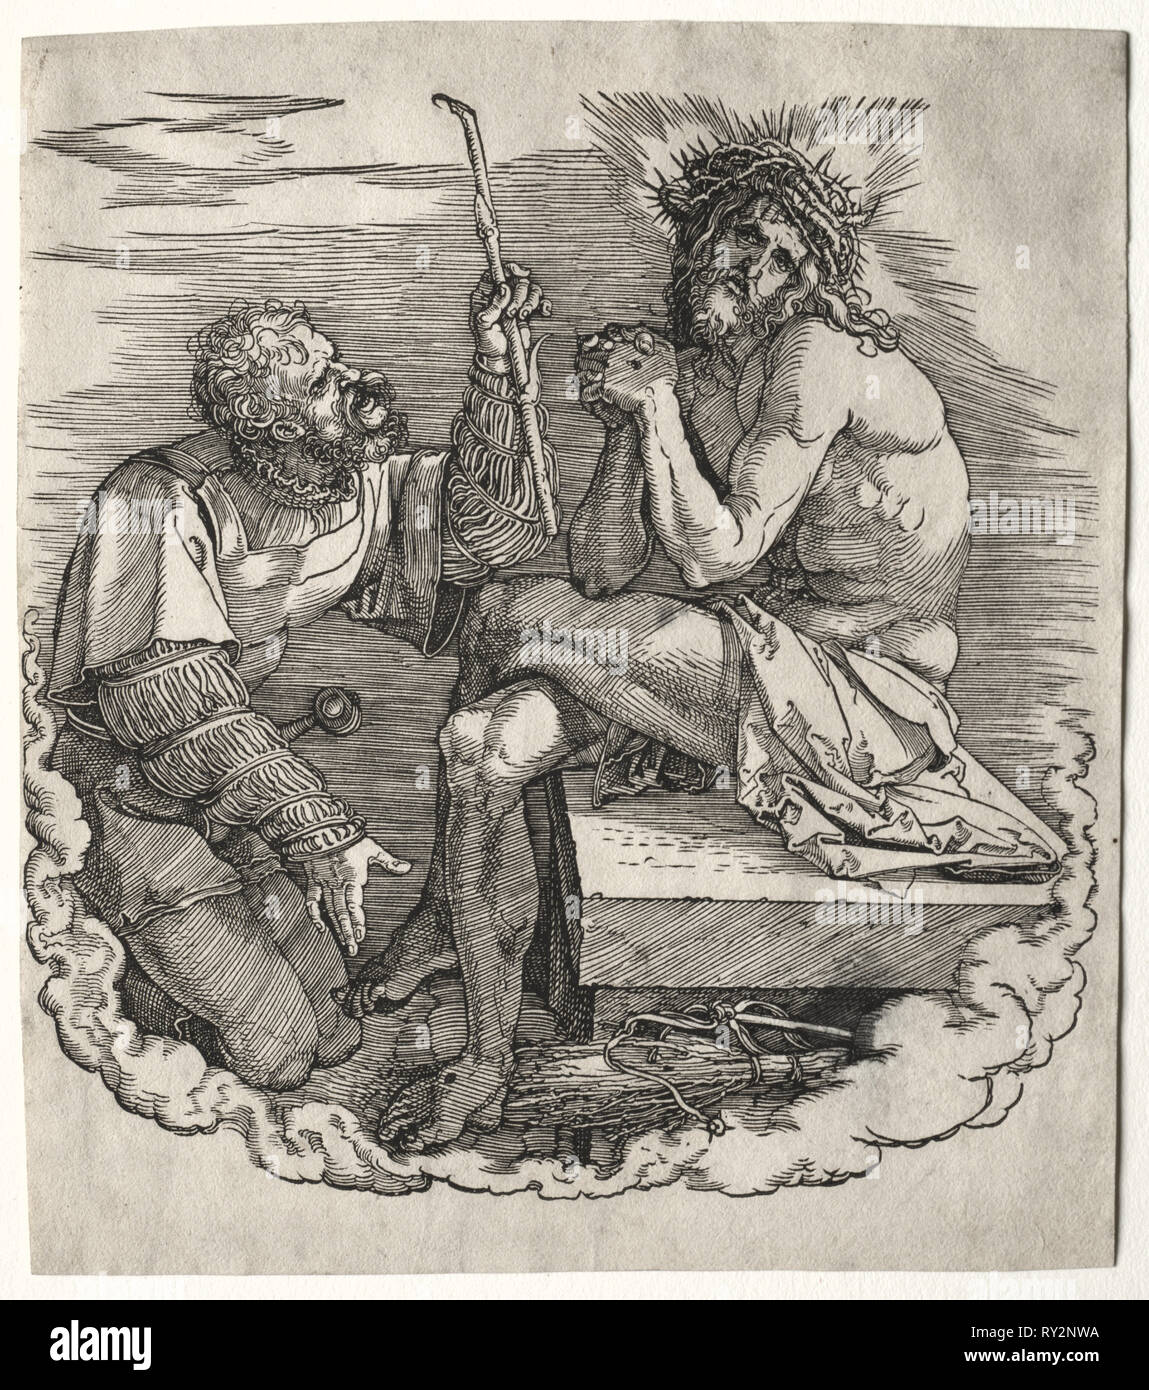 La grande passione: Titolo pagina - Cristo, uomo dei dolori che ben conosce il patire. Albrecht Dürer (Tedesco, 1471-1528). Xilografia Foto Stock